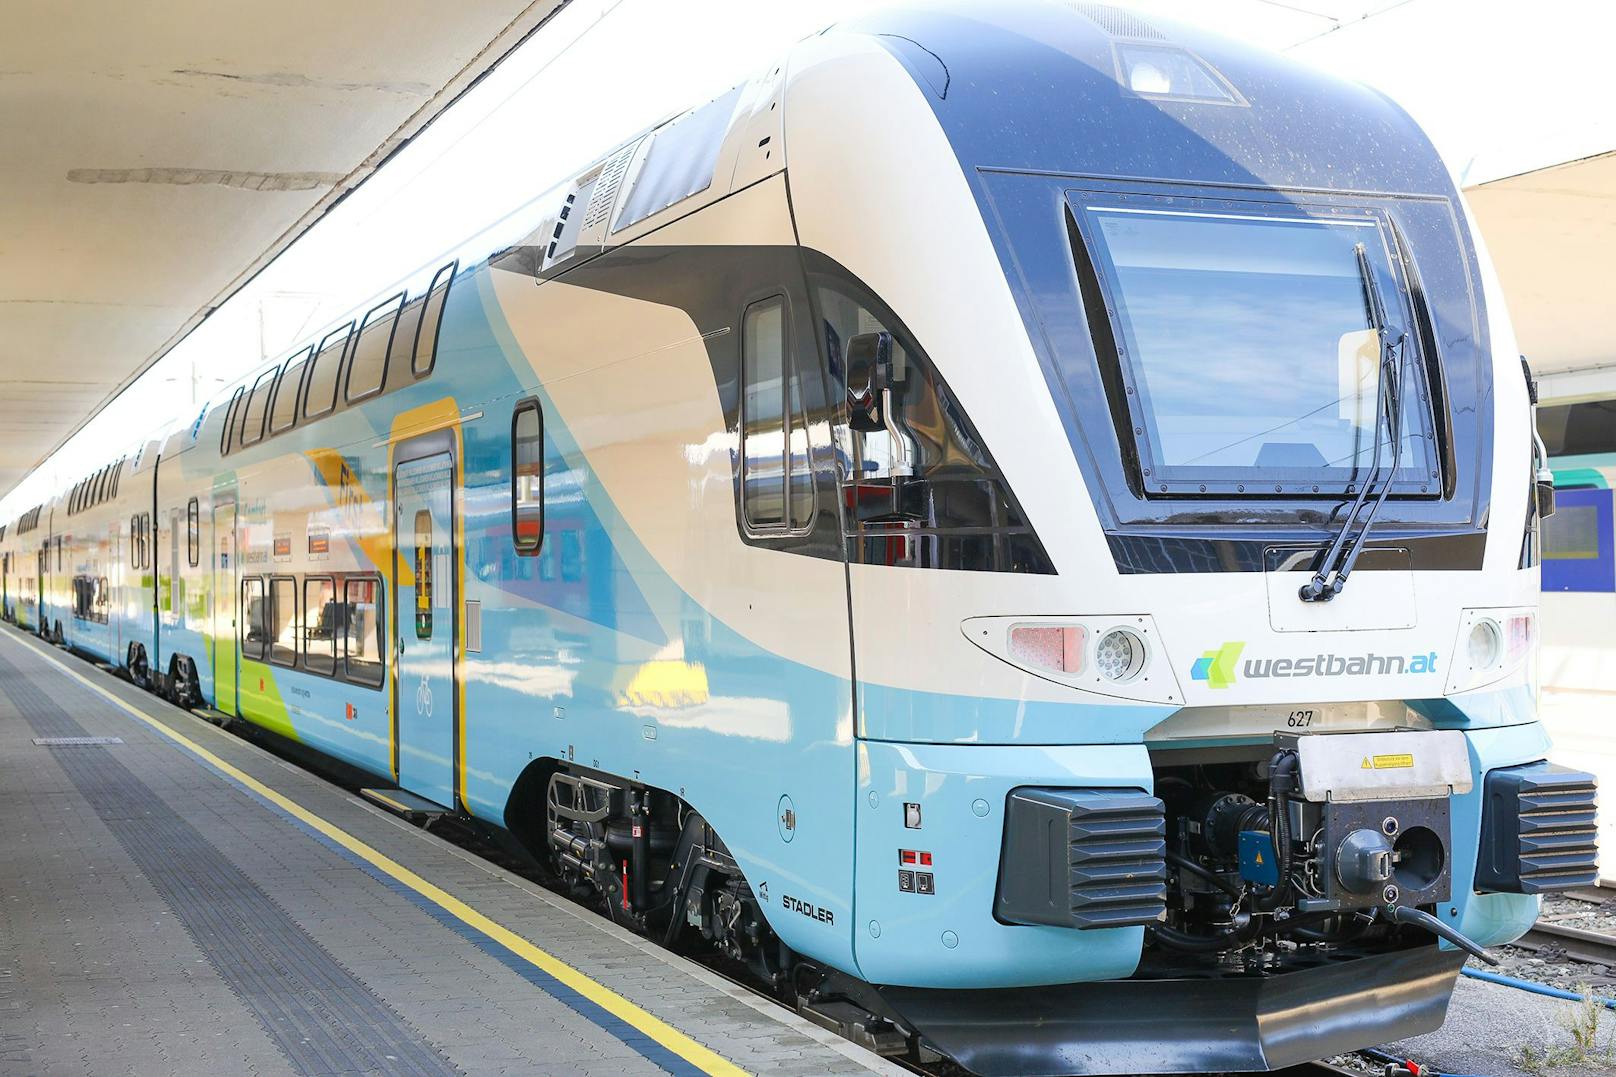 Die Züge können eine Höchstgeschwindigkeit von bis 200 km/h erreichen, was wiederum den Stromverbrauch nochmals spürbar senkt.